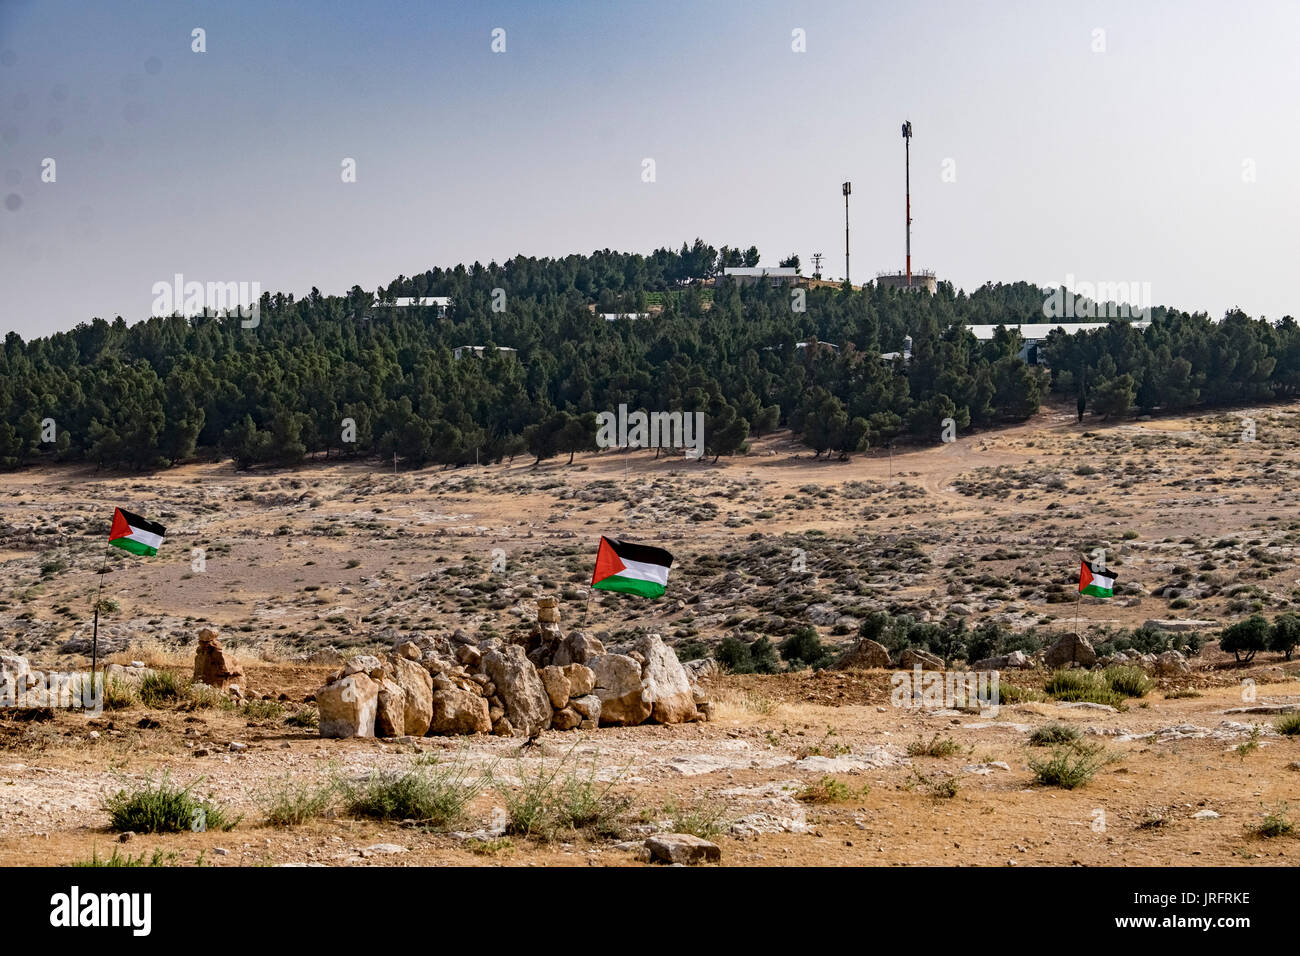 Banderas palestinas definir el territorio que había sido ocupado por los colonos israelíes en el asentamiento de Ma'on Chavat sobre una colina de aldeas palestinas Foto de stock